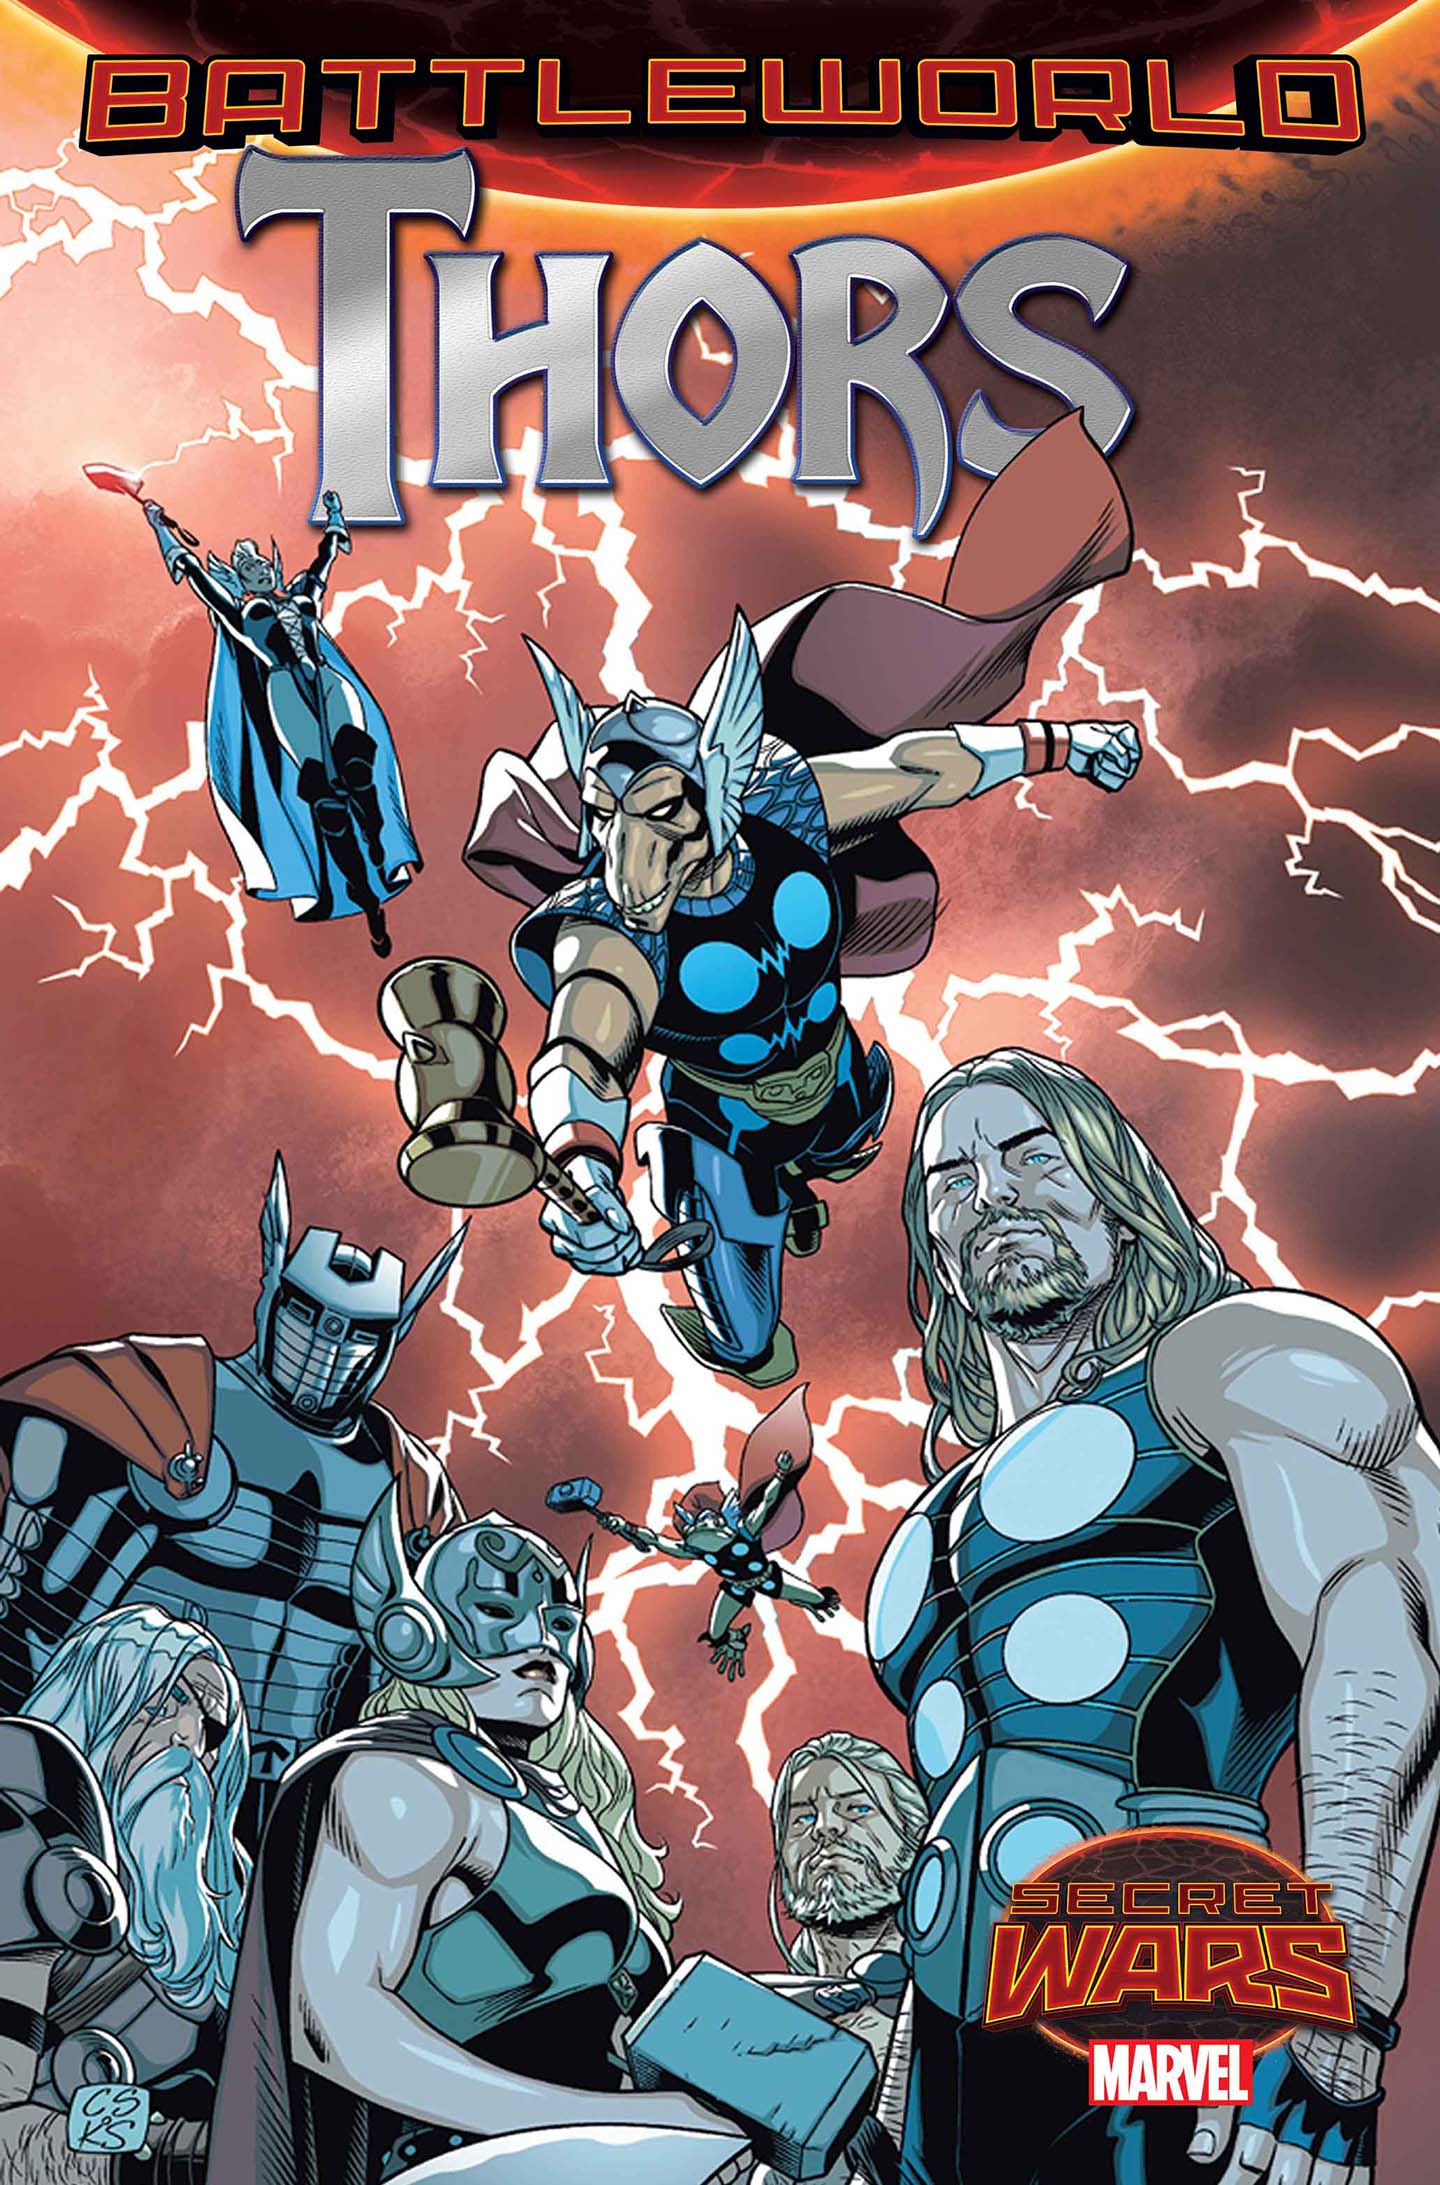 Battleworld's Lawmen In 'Battleworld: Thors #1'